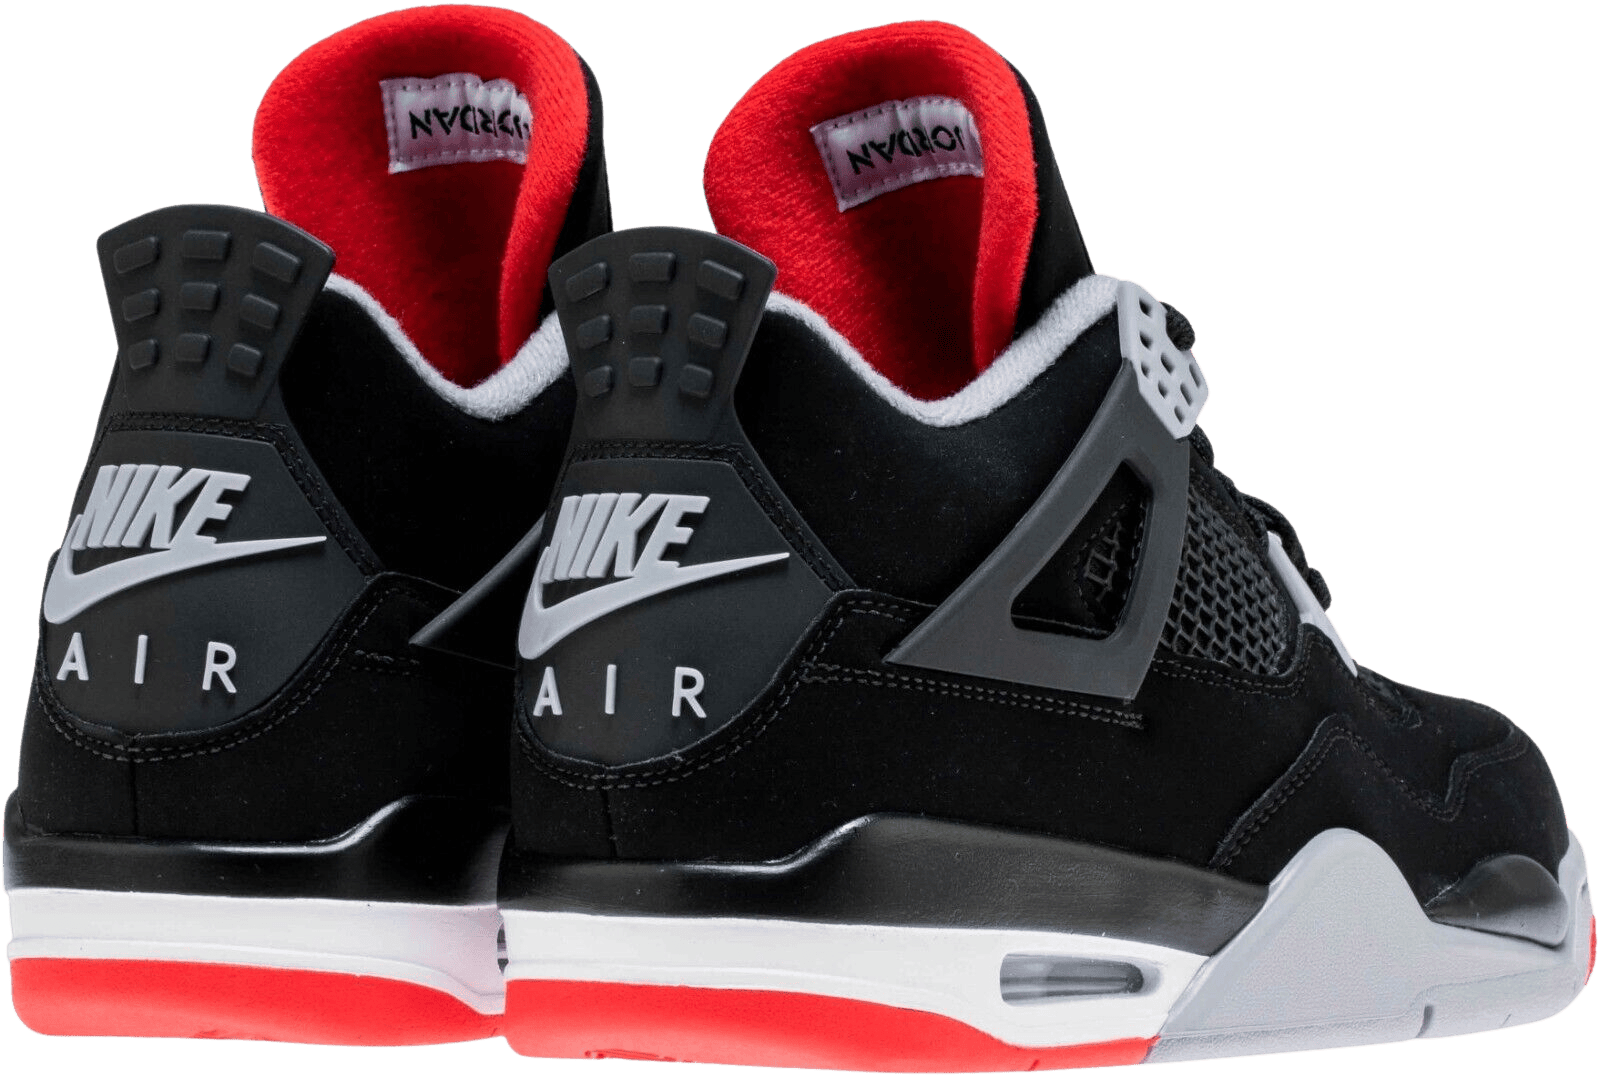 Black Nike Air Jordan Retro-4 Og Bred at Rs 2800/pair in Delhi